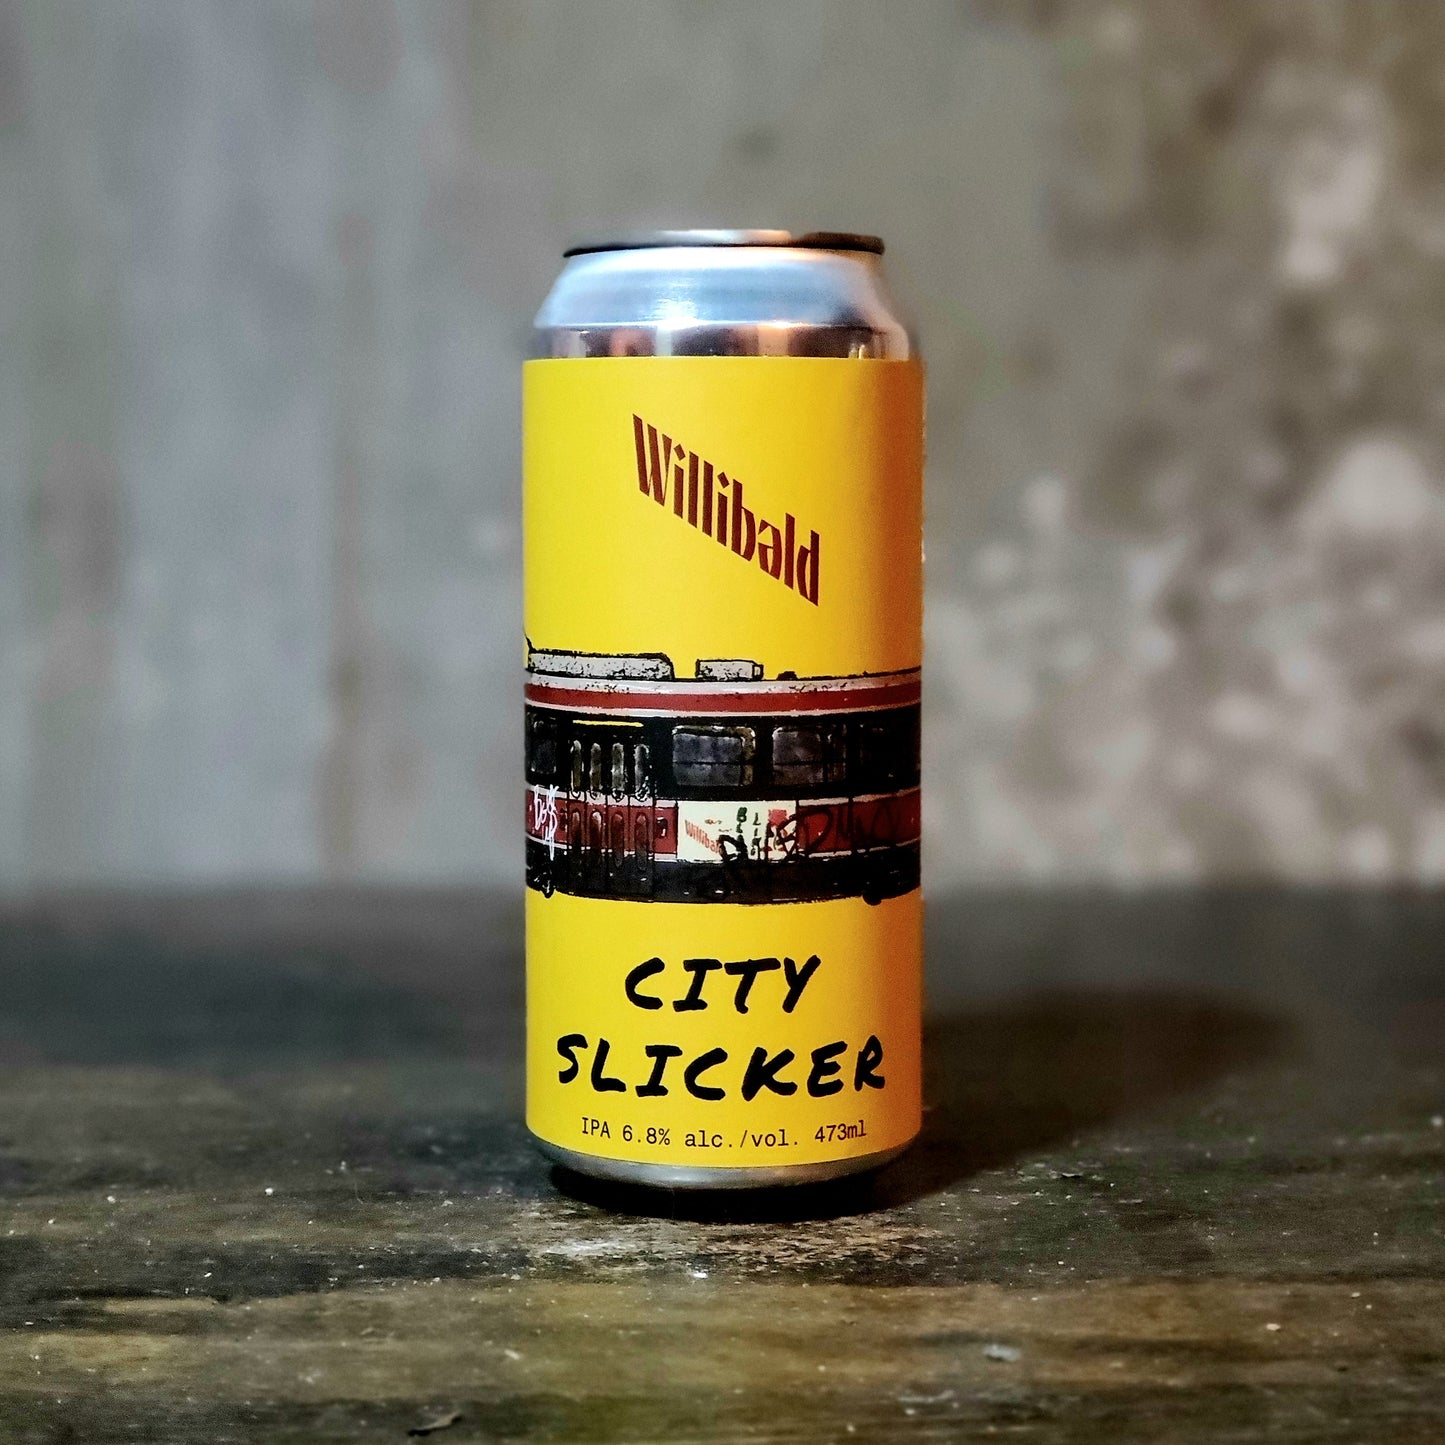 Willibald "City Slicker" Hazy IPA